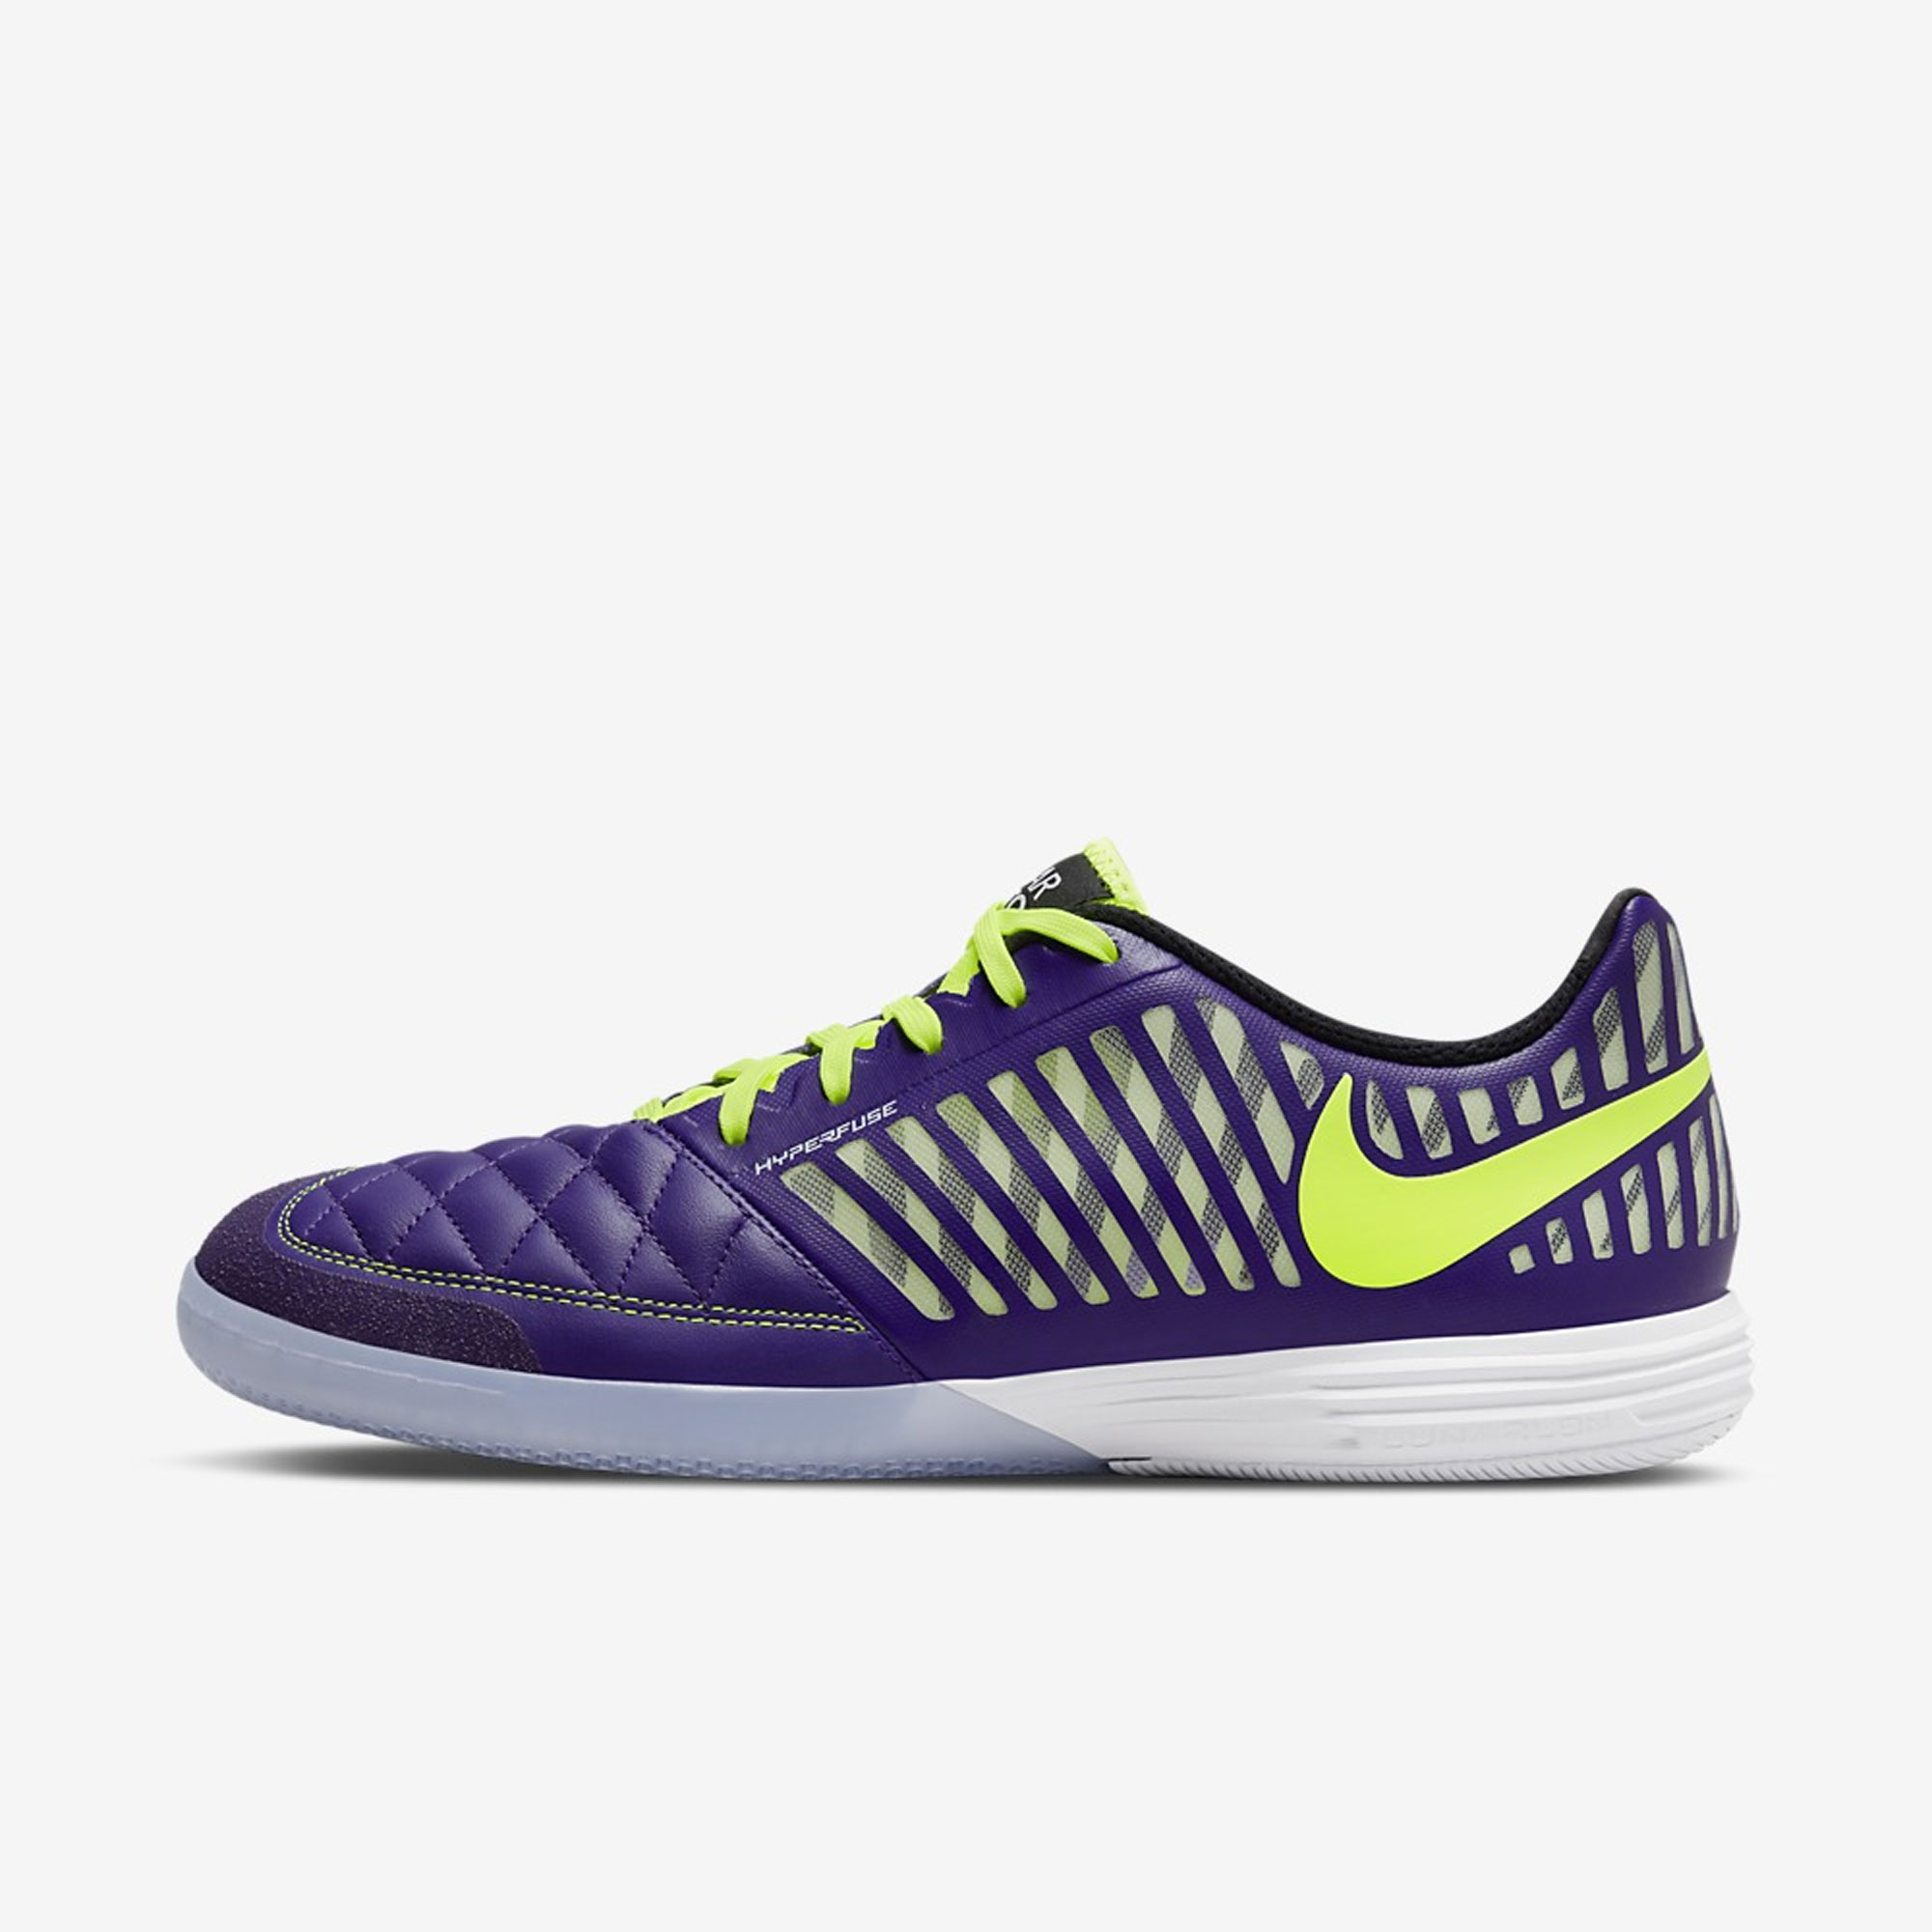 Proscrito vendedor Saludar stefanssoccer.com:Nike Lunar Gato II Indoor Soccer Shoes - Electro Purple /  Black / White / Volt